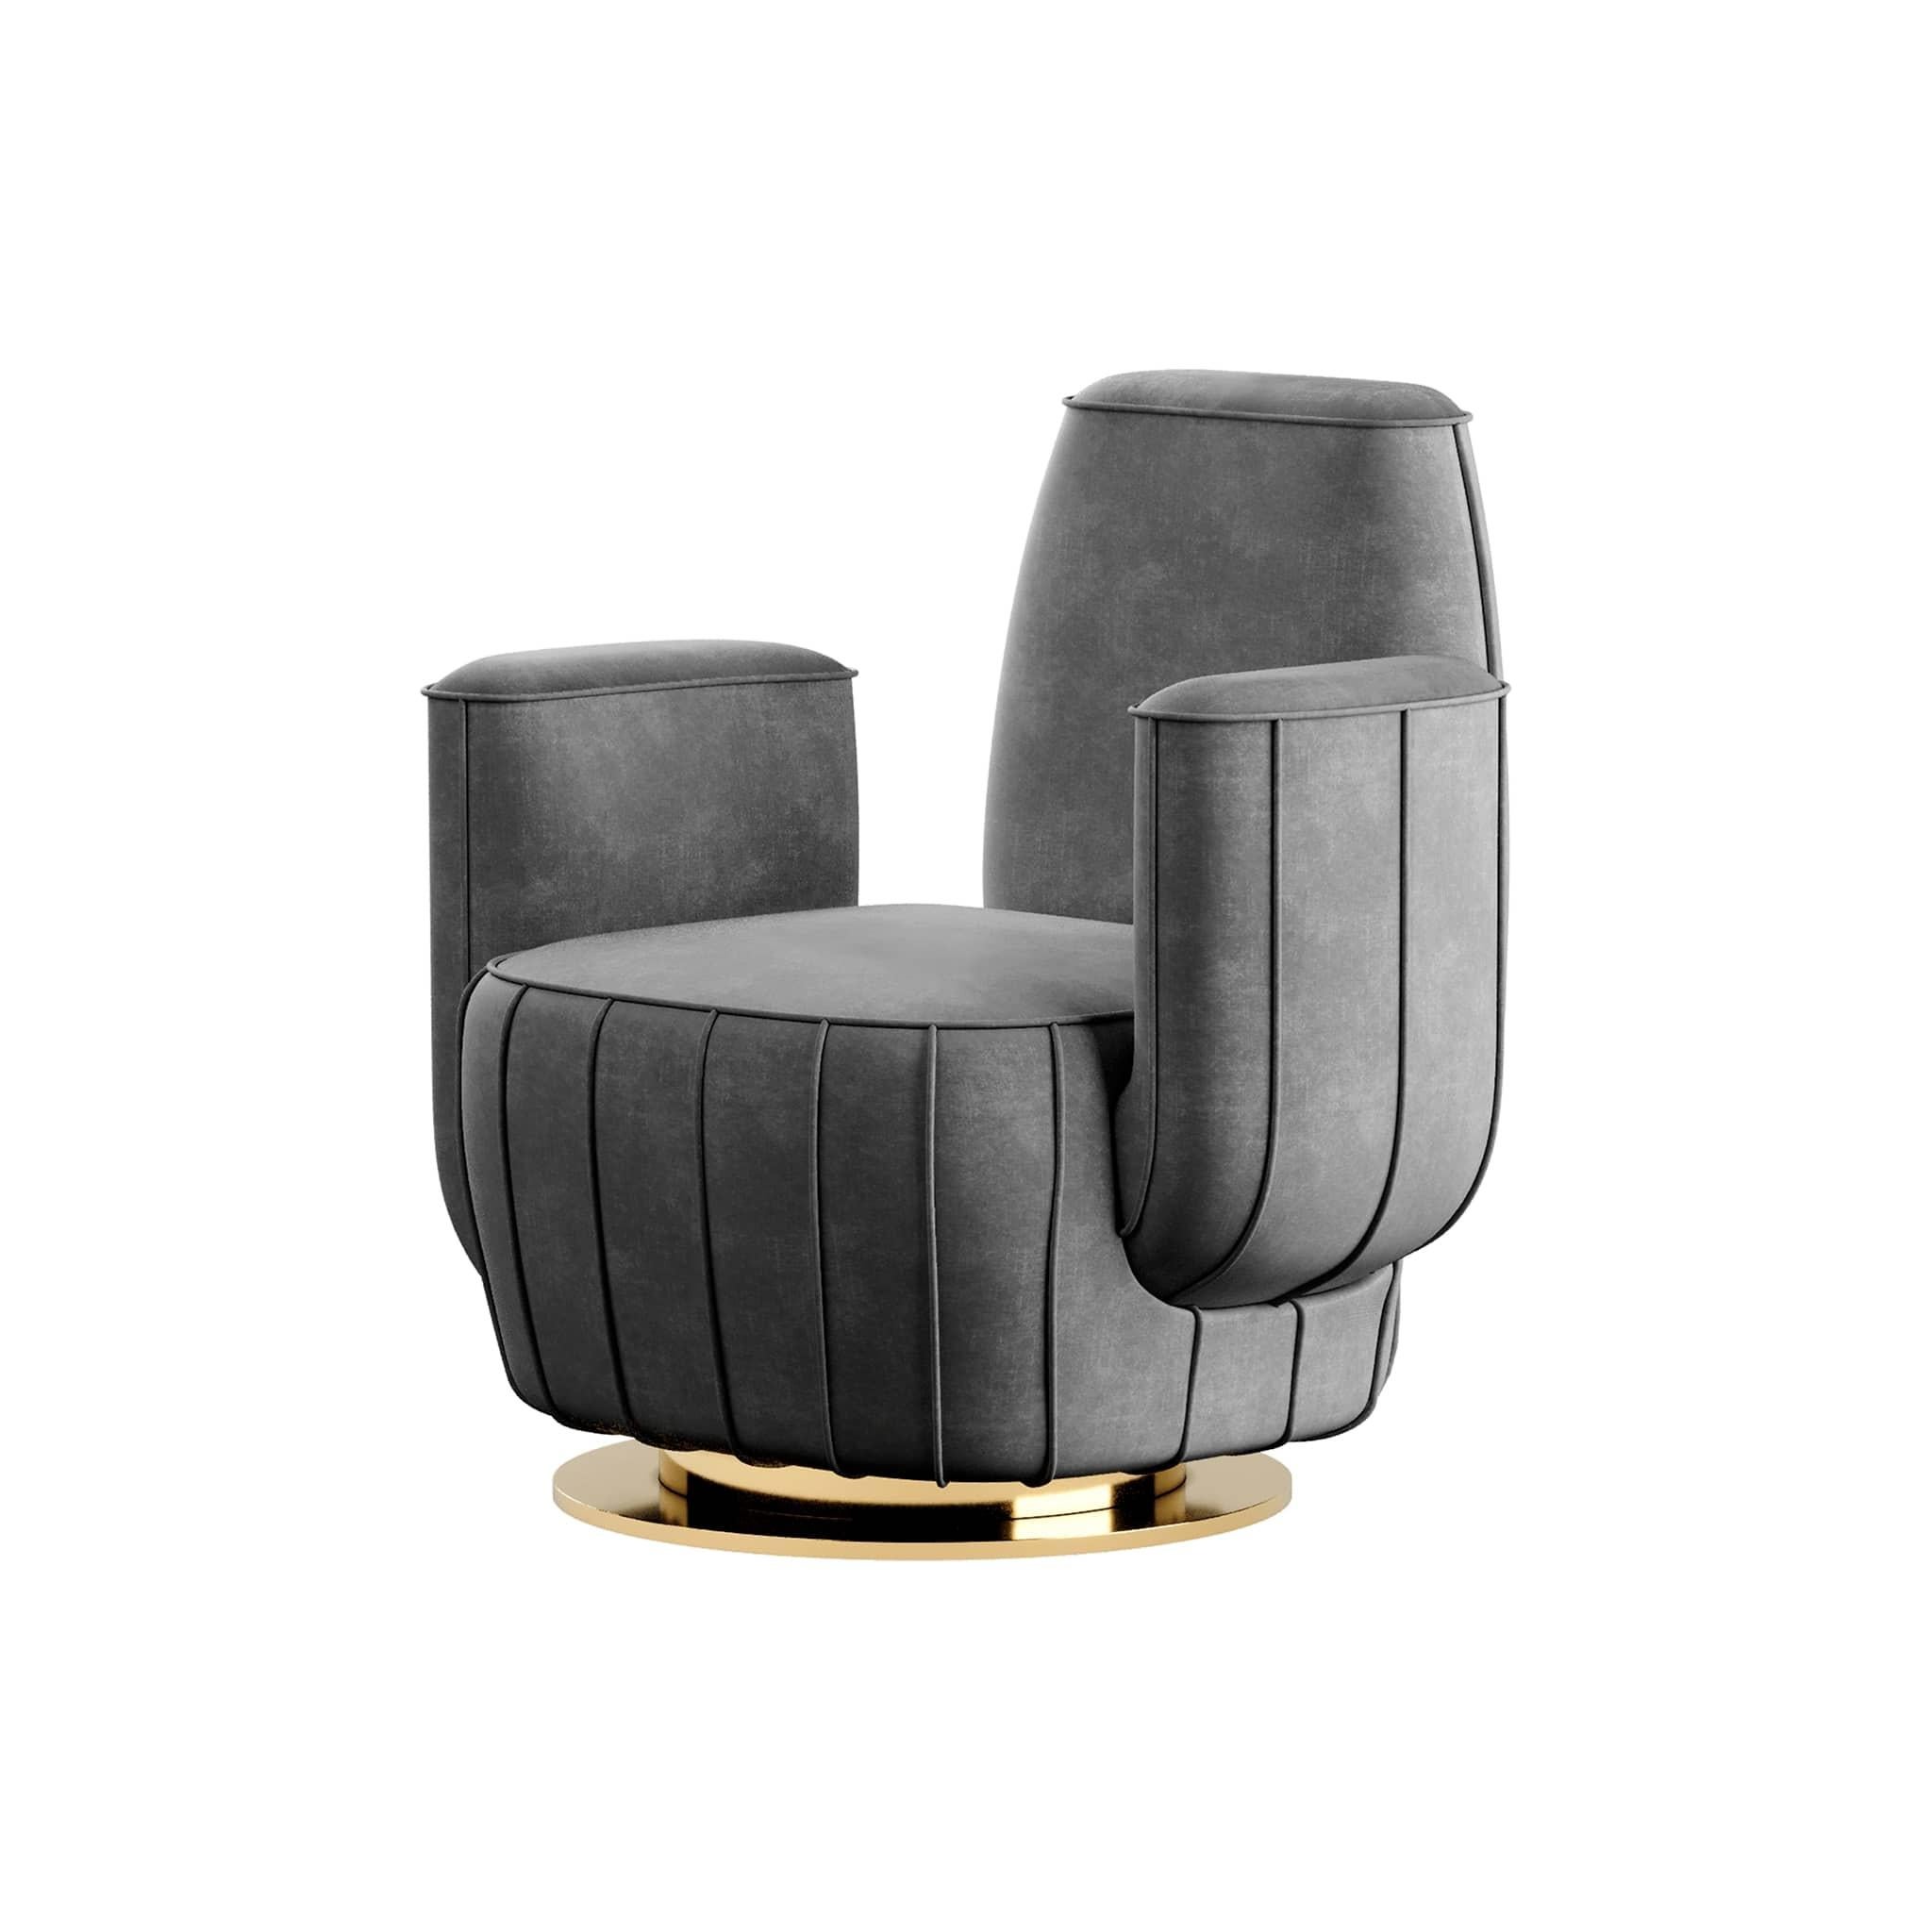 Le fauteuil Ajui II est une pièce conceptuelle. Il s'agit d'un fauteuil d'appoint qui combine une interprétation artistique d'un cactus avec le confort attendu d'un fauteuil de luxe. Ce fauteuil moderne est le choix parfait pour un projet d'espace